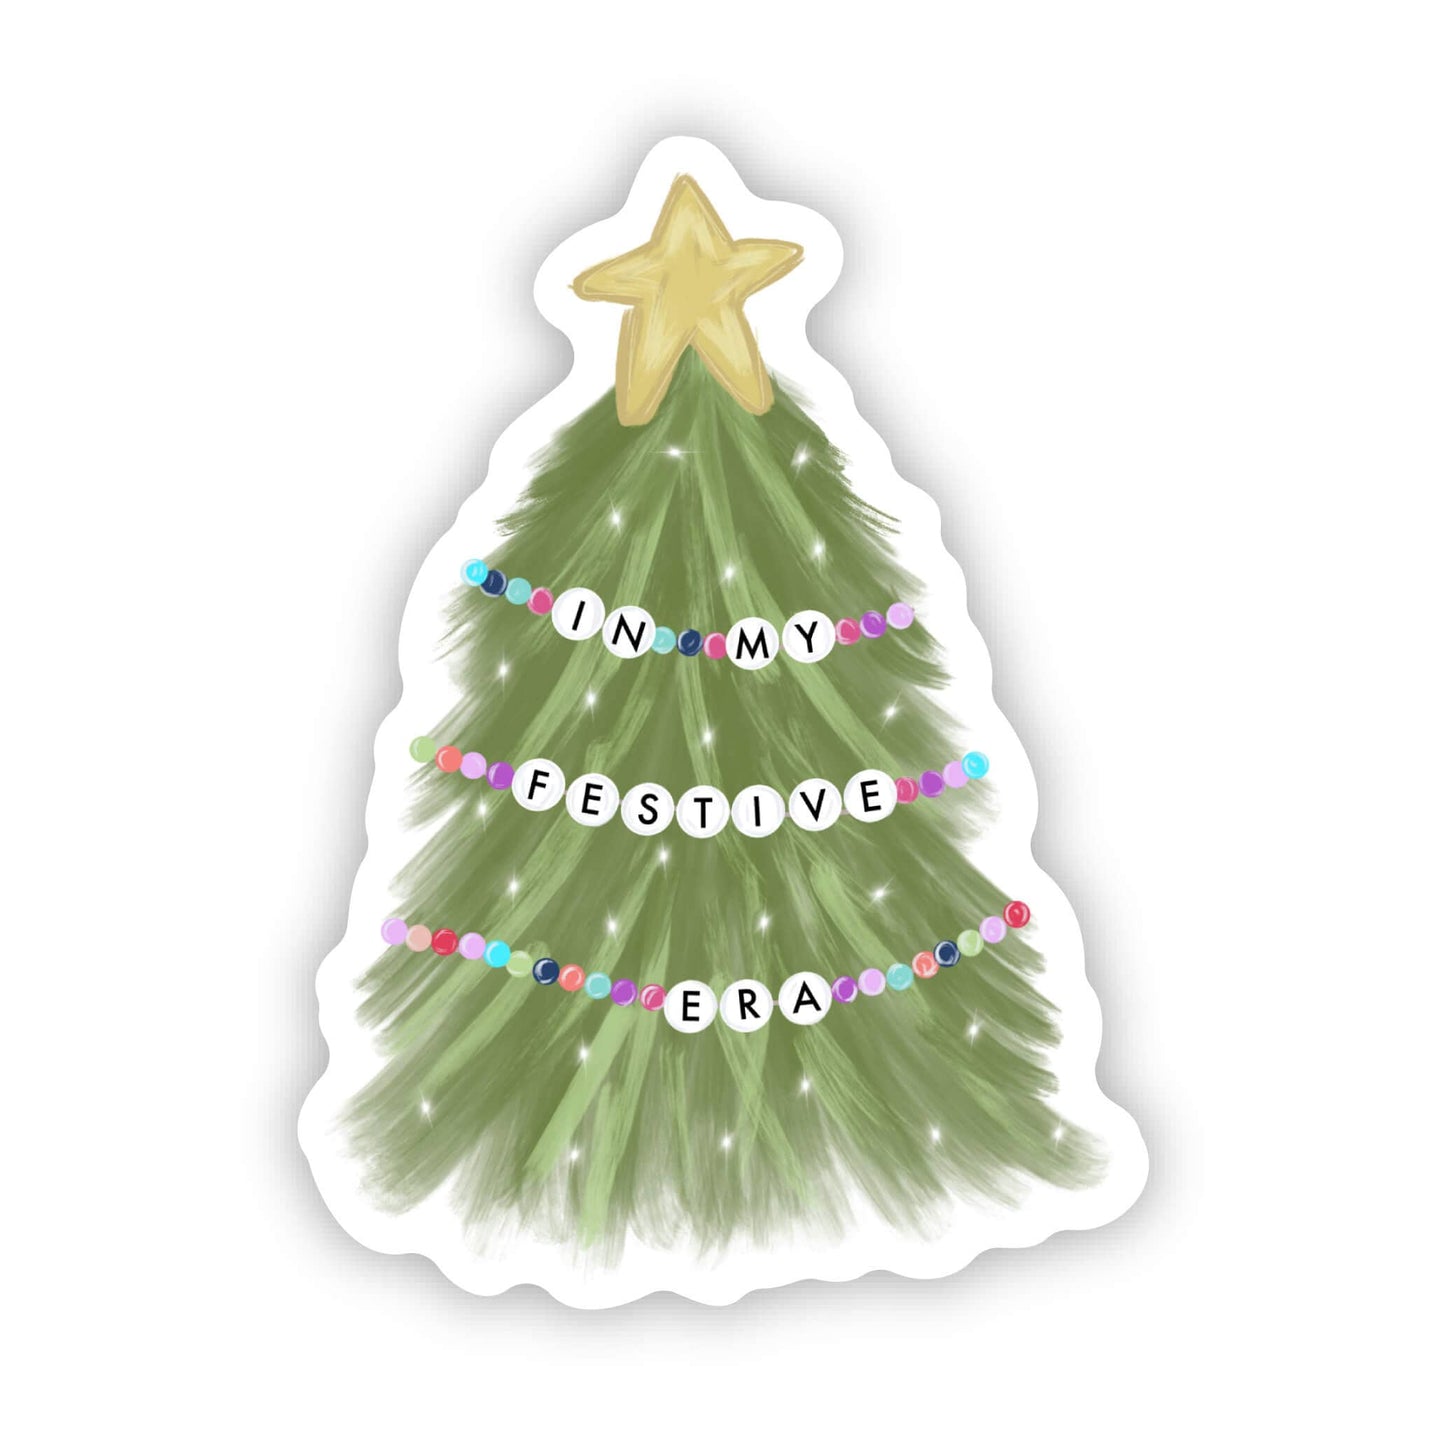 In my Festive Era - Eras tour Christmas sticker - Swiftie sticker